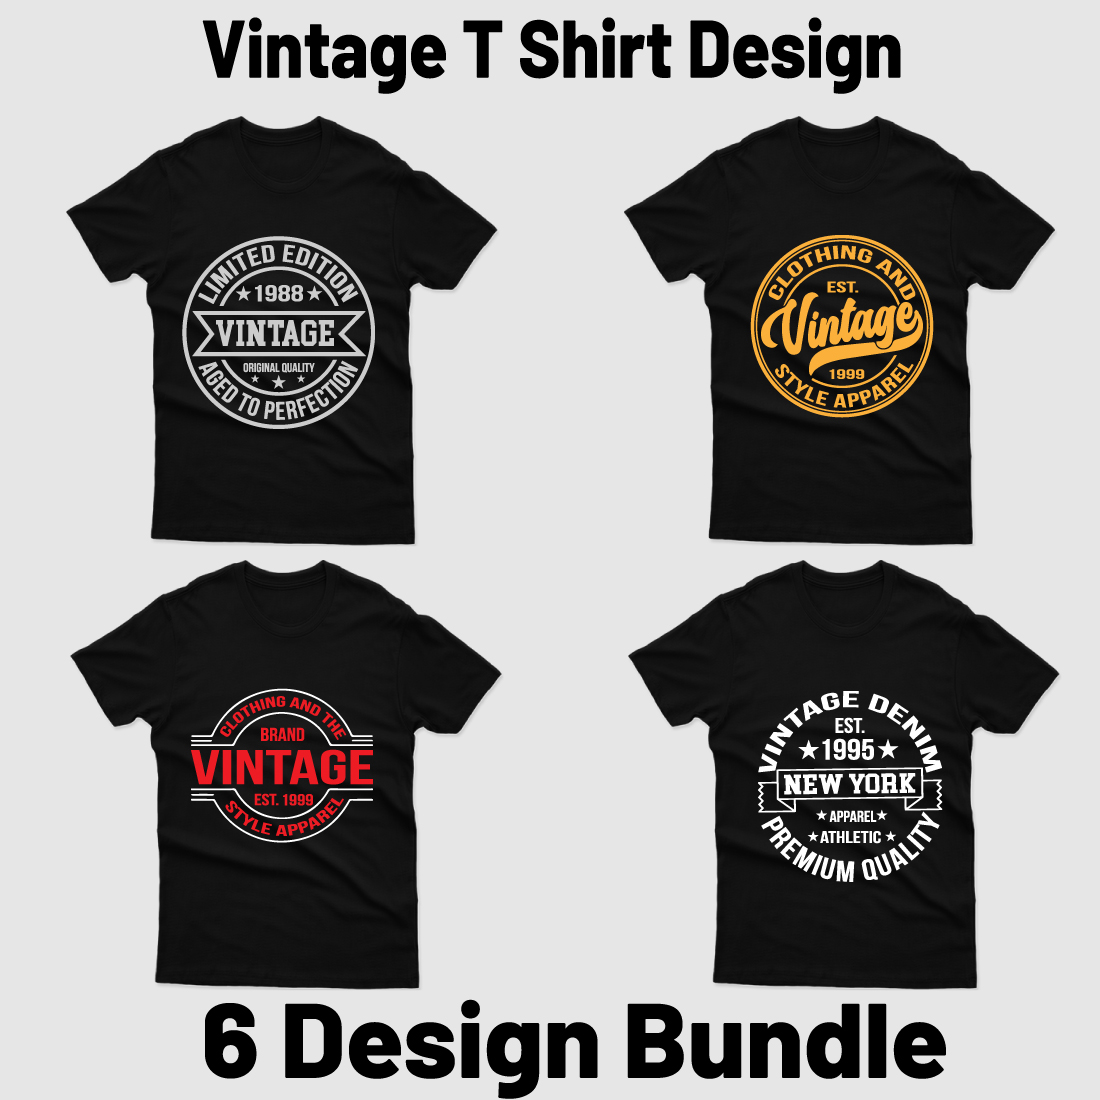 Vintage T Shirt Design Bundle cover image.